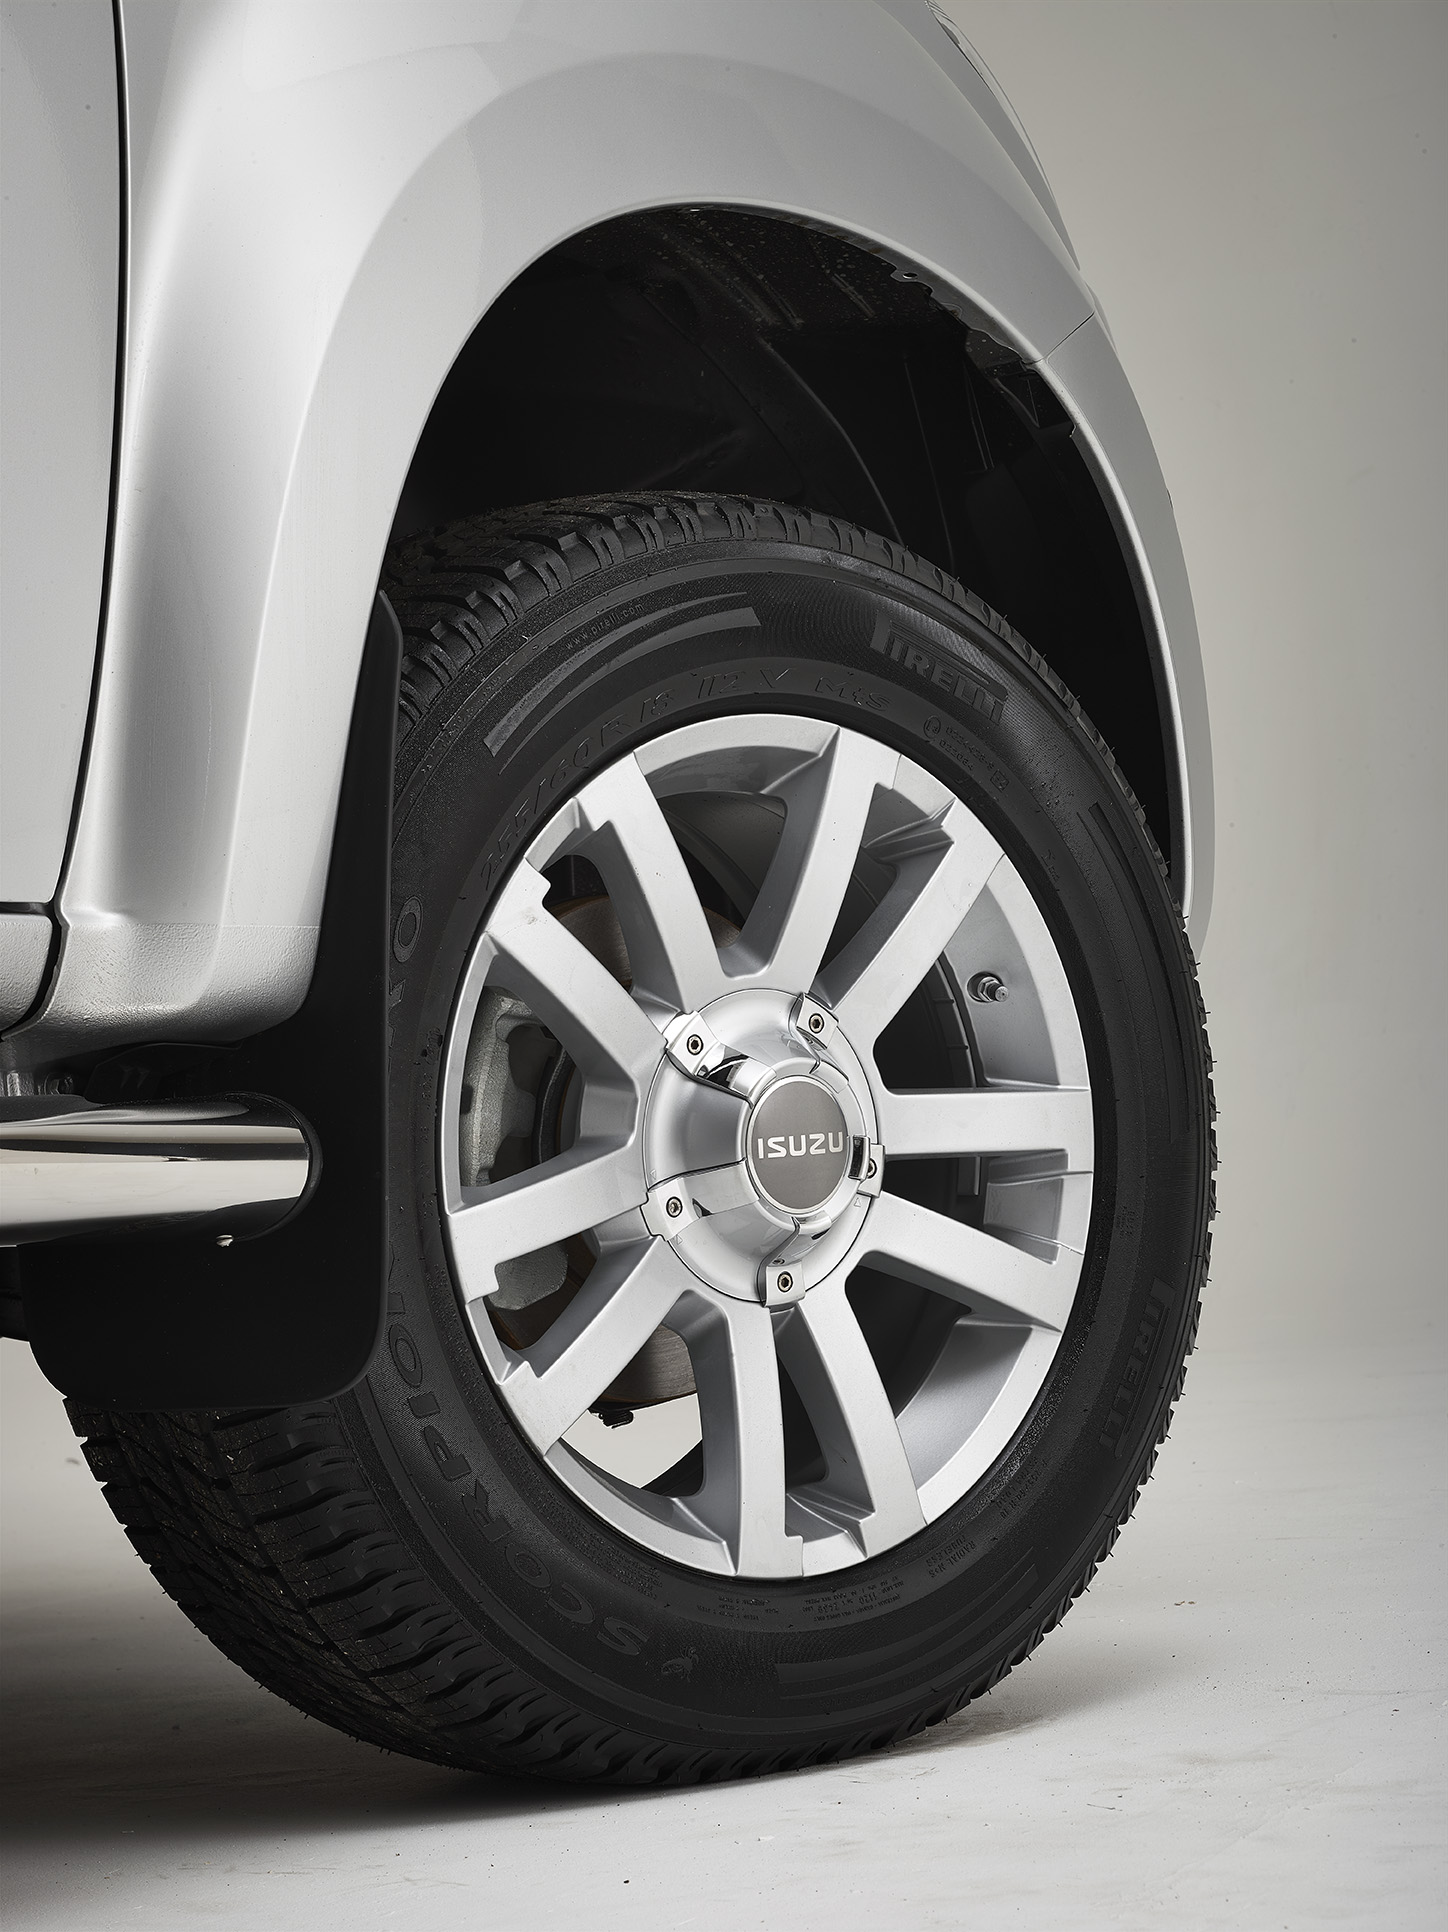 18" Silver Alloy Wheel & Tyres (Pirelli Scorpion 255/60R18)